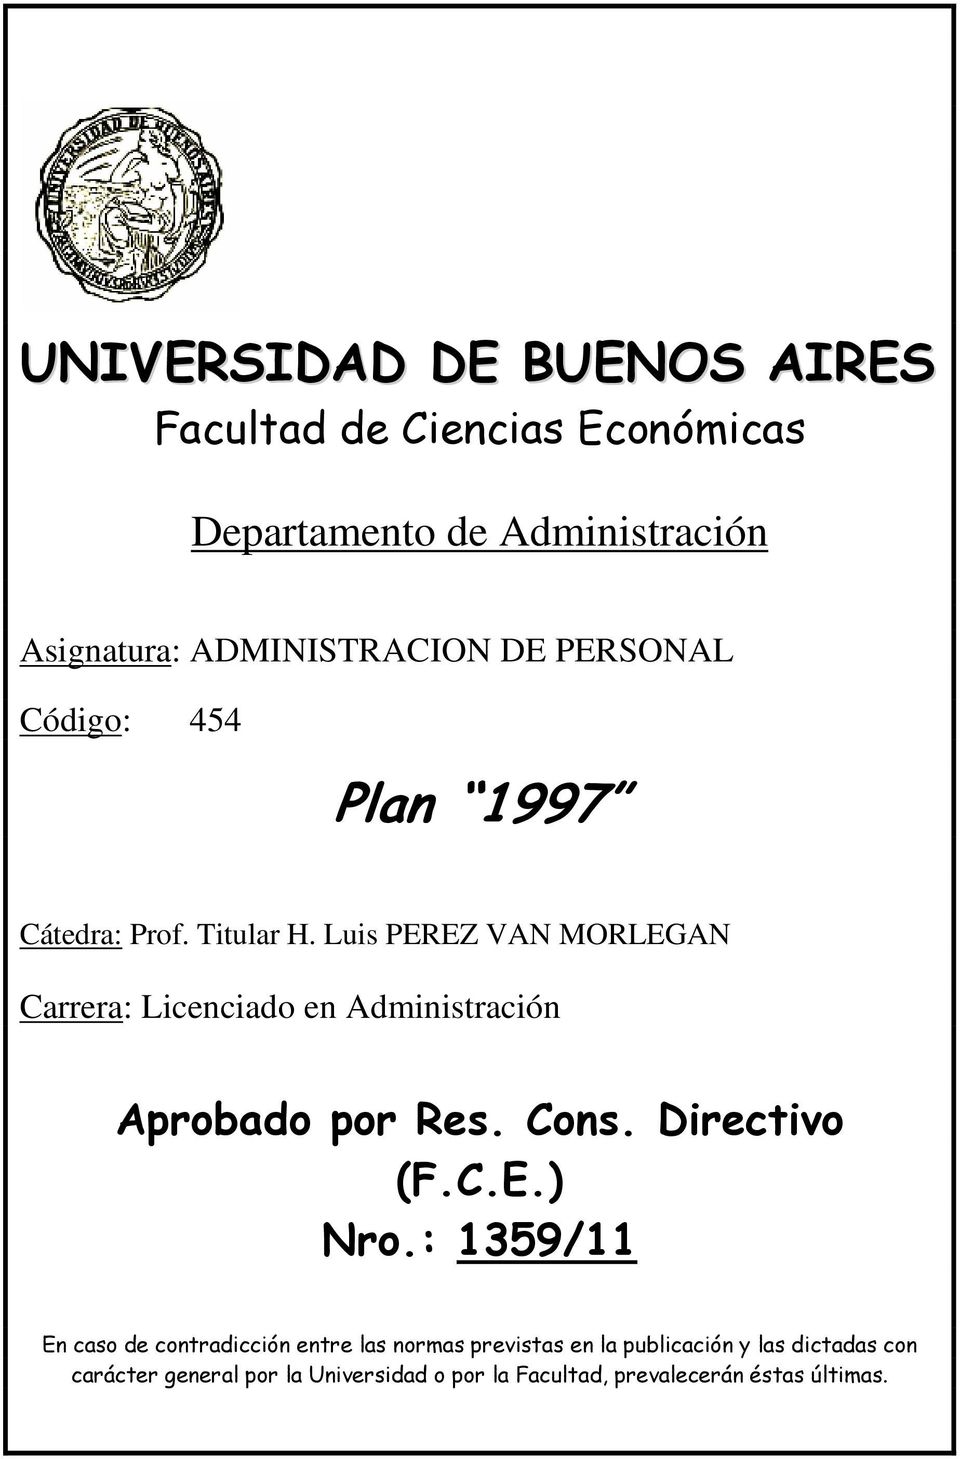 Luis PEREZ VAN MORLEGAN Carrera: Licenciado en Administración Aprobado por Res. Cons. Directivo (F.C.E.) Nro.